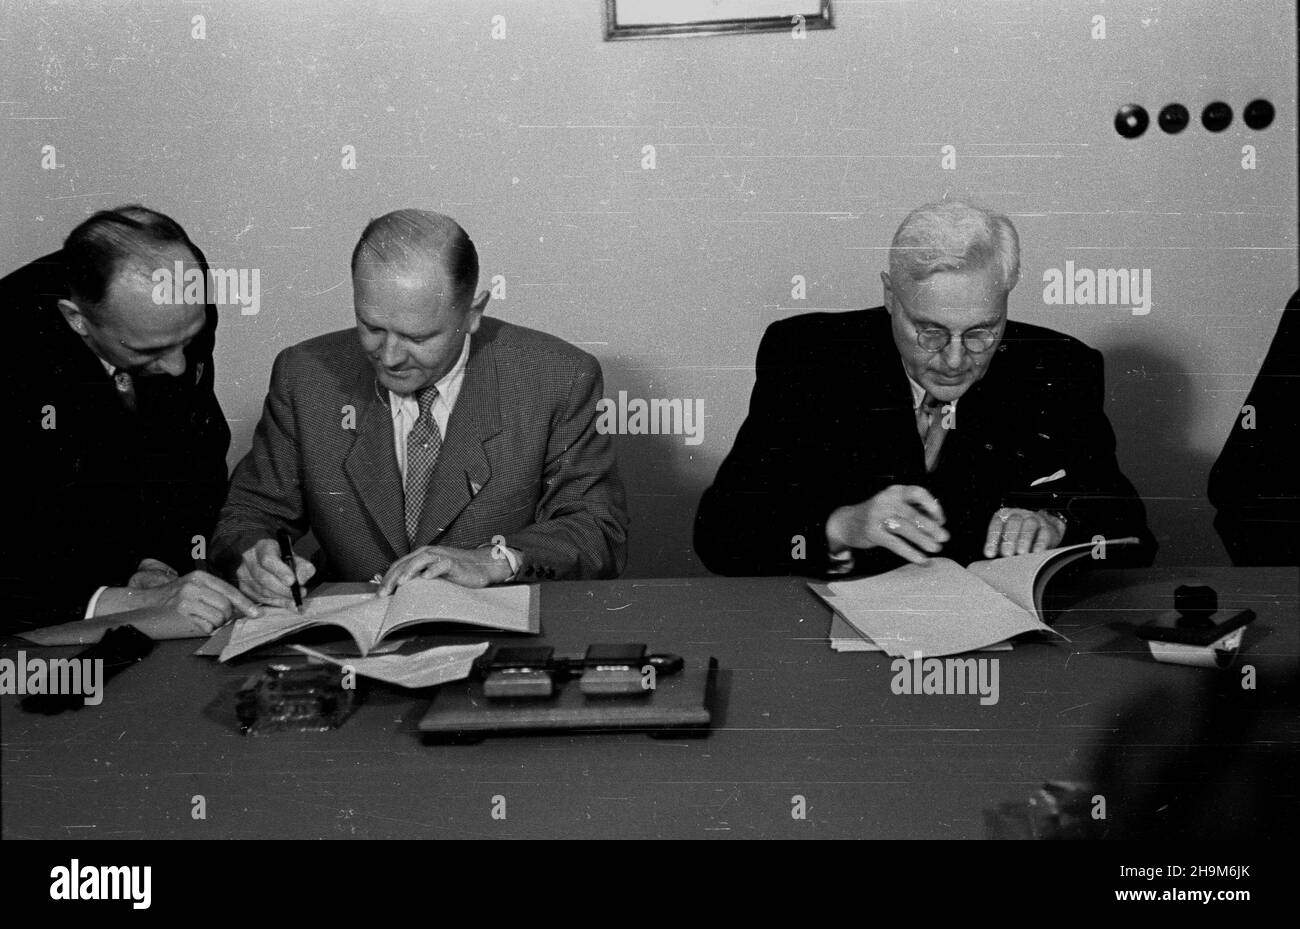 Warszawa, 1948-09-02. Podpisanie przez Polskê i Czechos³owacjê umowy pocztowo-telegraficznej. Nz. minister poczt i telegrafów prof. Wac³aw Szymanowski (P), minister poczt dr Alois Neuman (2L). ka  PAP      Warsaw, Sept. 2, 1948. Poland and Czechoslovakia sign an agreement on posts and telegraphs. Pictured: Post and Telegraphs Minister Professor Waclaw Szymanowski (right), Post Minister Alois Neuman (2nd left).  ka  PAP Stock Photo